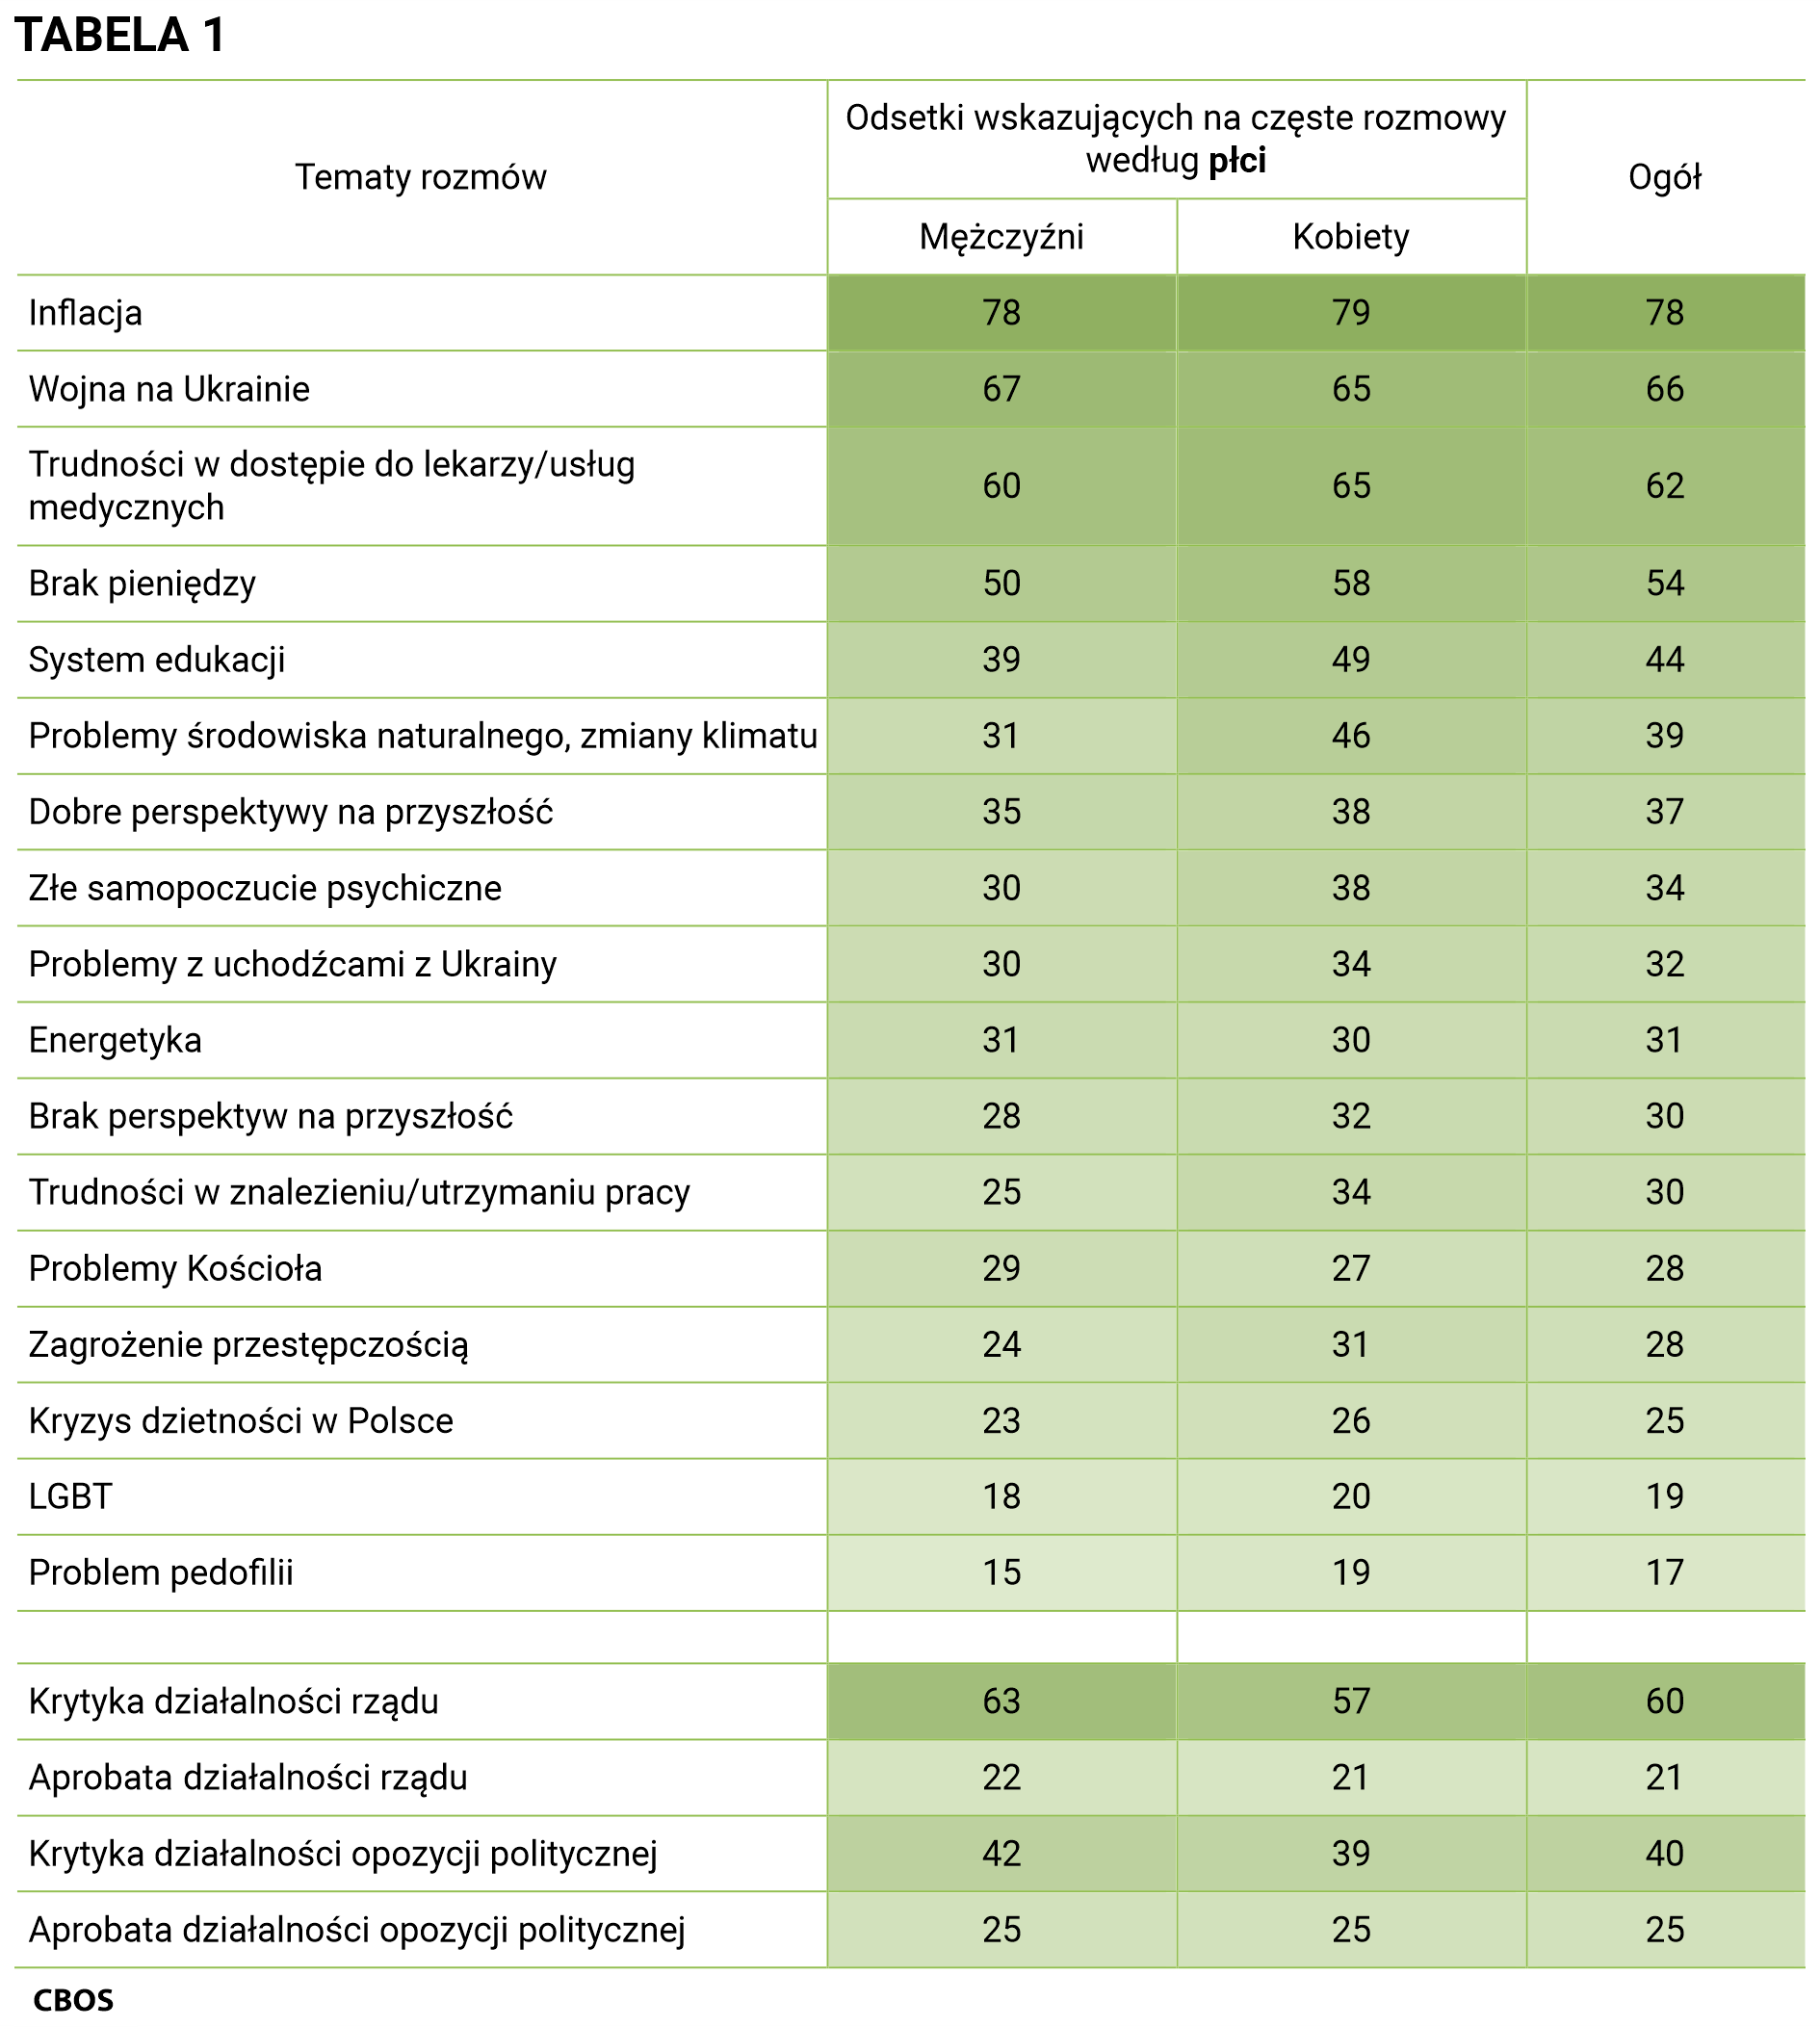 Tabela 1 Tematy rozmów i odsetki wskazujących na częste rozmowy według płci. Inflacja - ogół (78%), mężczyźni (78%), kobiety (79%); Wojna na Ukrainie - ogół (66%), mężczyźni (67%), kobiety (65%); Trudności w dostępie do lekarzy i usług medycznych - ogół (62%), mężczyźni (60%), kobiety (65%); Brak pieniędzy - ogół (54%), mężczyźni (50%), kobiety (58%); System edukacji - ogół (44%), mężczyźni (39%), kobiety (49%); Problemy środowiska naturalnego, zmiany klimatu - ogół (39%), mężczyźni (31%), kobiety (46%); Dobre perspektywy na przyszłość - ogół (37%), mężczyźni (35%), kobiety (38%); Złe samopoczucie psychiczne - ogół (34%), mężczyźni (30%), kobiety (38%); Problemy z uchodźcami z Ukrainy - ogół (32%), mężczyźni (30%), kobiety (34%); Energetyka - ogół (31%), mężczyźni (31%), kobiety (30%); Brak perspektyw na przyszłość - ogół (30%), mężczyźni (28%), kobiety (32%); Trudności w znalezieniu/utrzymaniu pracy - ogół (30%), mężczyźni (25%), kobiety (34%); Problemy Kościoła - ogół (28%), mężczyźni (29%), kobiety (27%); Zagrożenie przestępczością - ogół (28%), mężczyźni (24%), kobiety (31%); Kryzys dzietności w Polsce - ogół (25%), mężczyźni (23%), kobiety (26%); LGBT - mężczyźni (18%), kobiety (20%), ogół (19%); Problem pedofilii - ogół (17%), mężczyźni (15%), kobiety (19%); Krytyka działalności rządu - ogół (60%), mężczyźni (63%), kobiety (57%); Aprobata działalności rządu - ogół (21%), mężczyźni (22%), kobiety (21%); Krytyka działalności opozycji politycznej - ogół (40%), mężczyźni (42%), kobiety (39%); Aprobata działalności opozycji politycznej - ogół (25%), mężczyźni (25%), kobiety (25%).